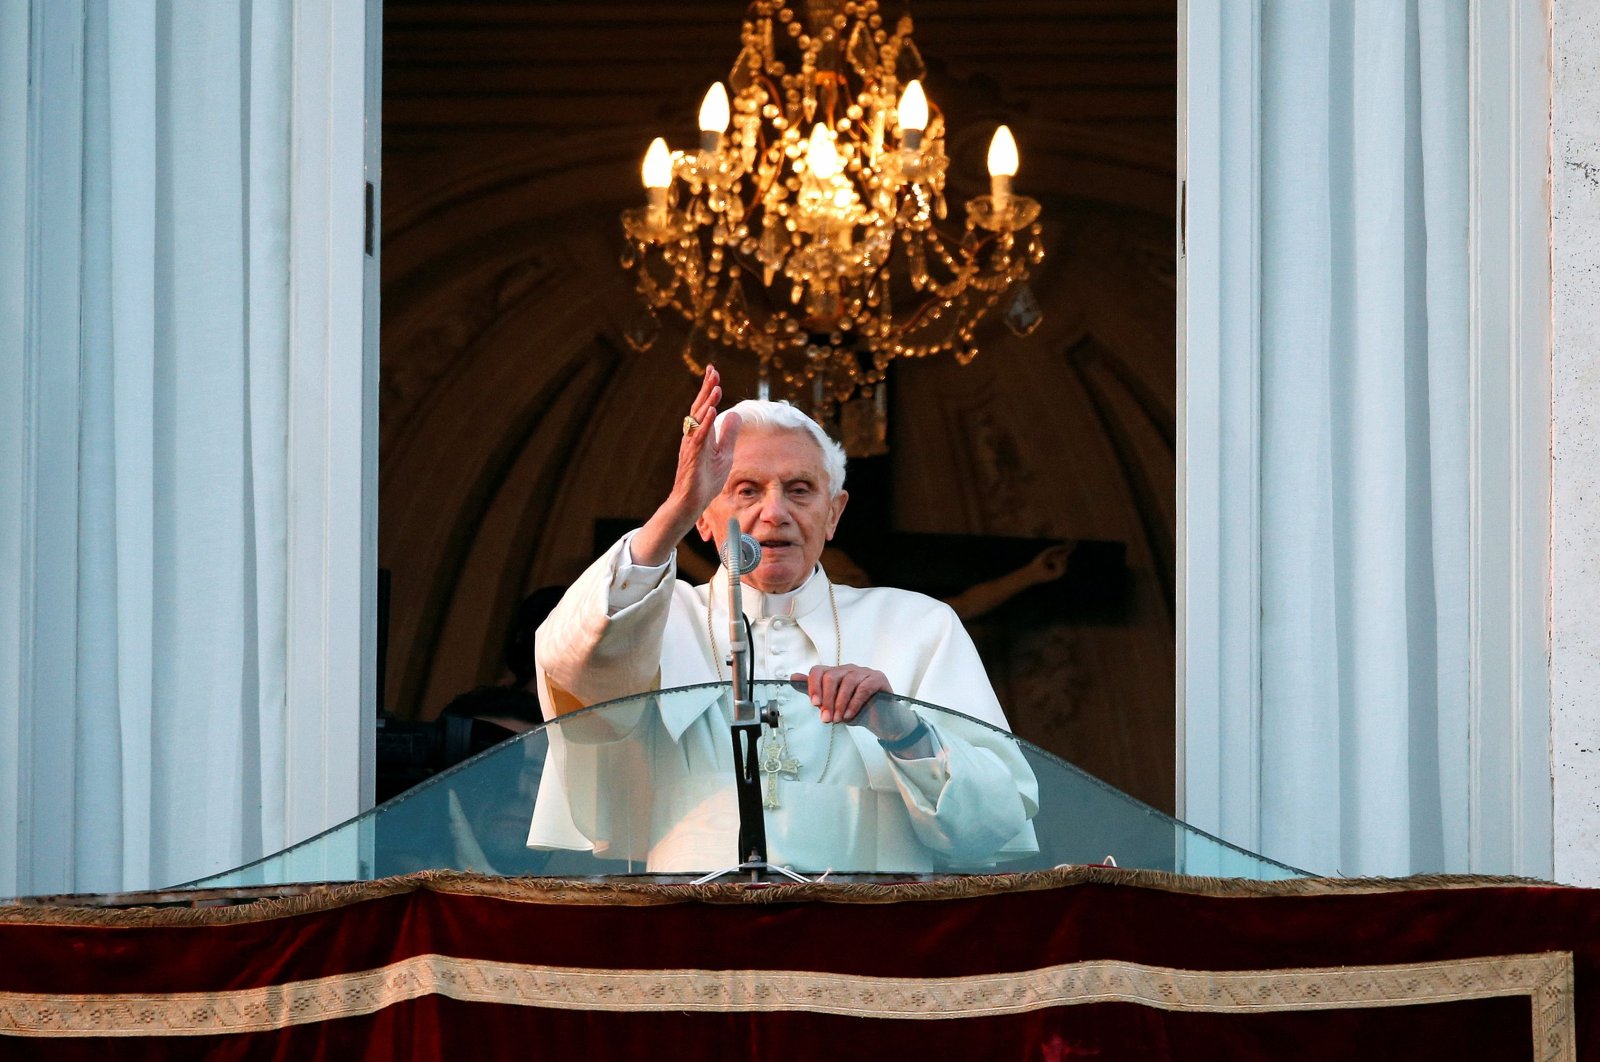 Mantan Paus Benediktus Gagal Menindak Pelecehan Seksual di Keuskupan Jerman: Probe